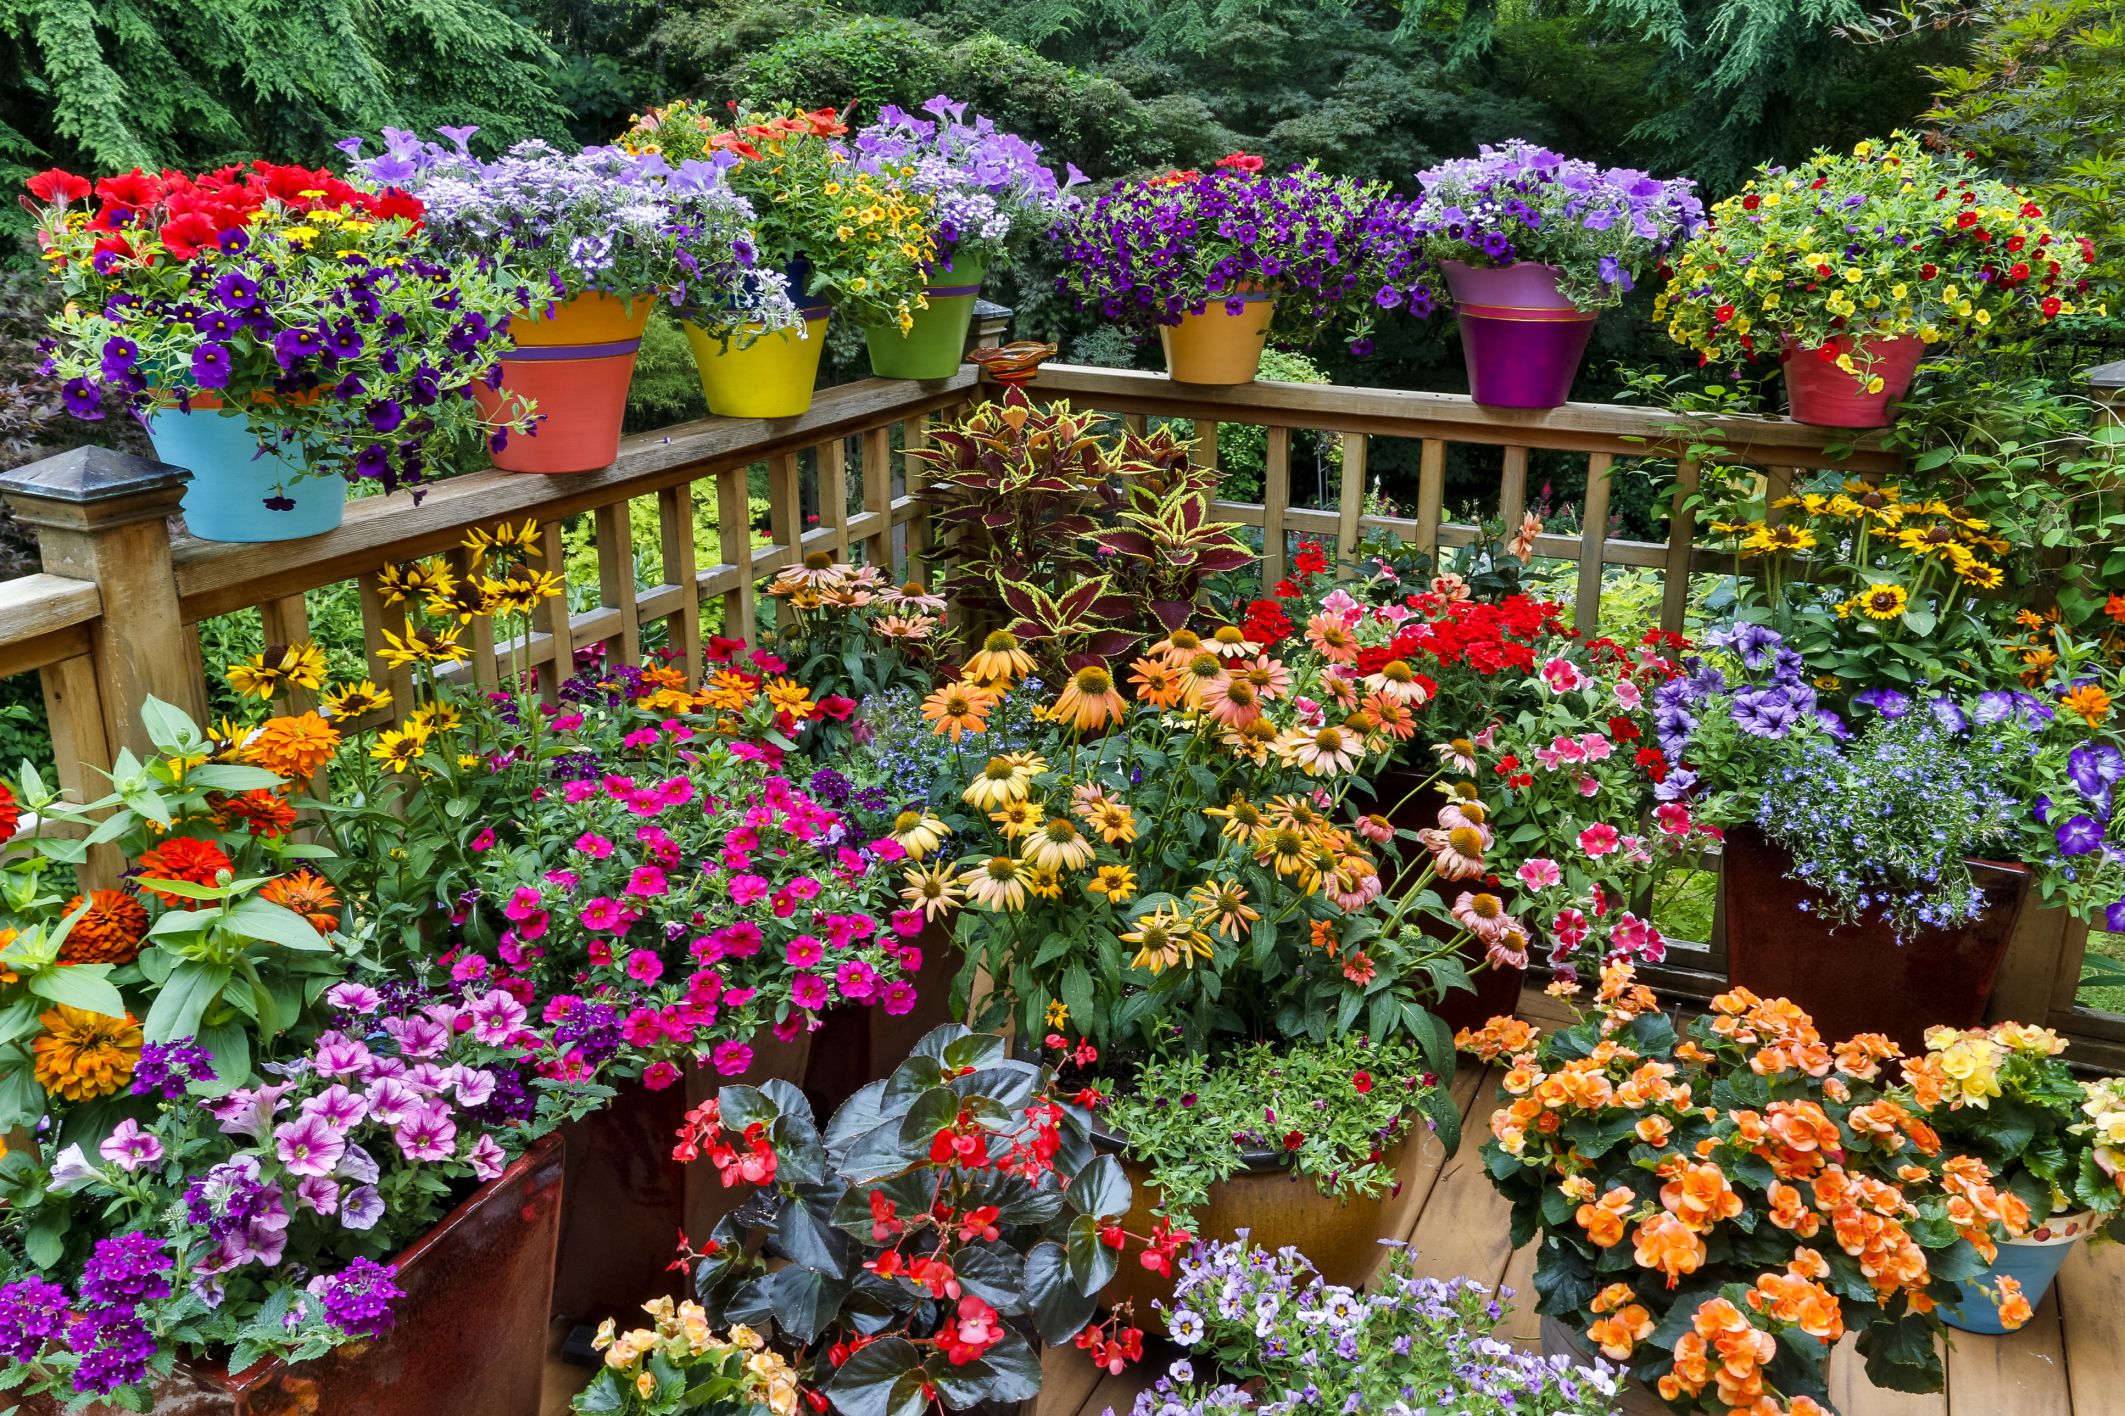 Colorful Garden Ideas